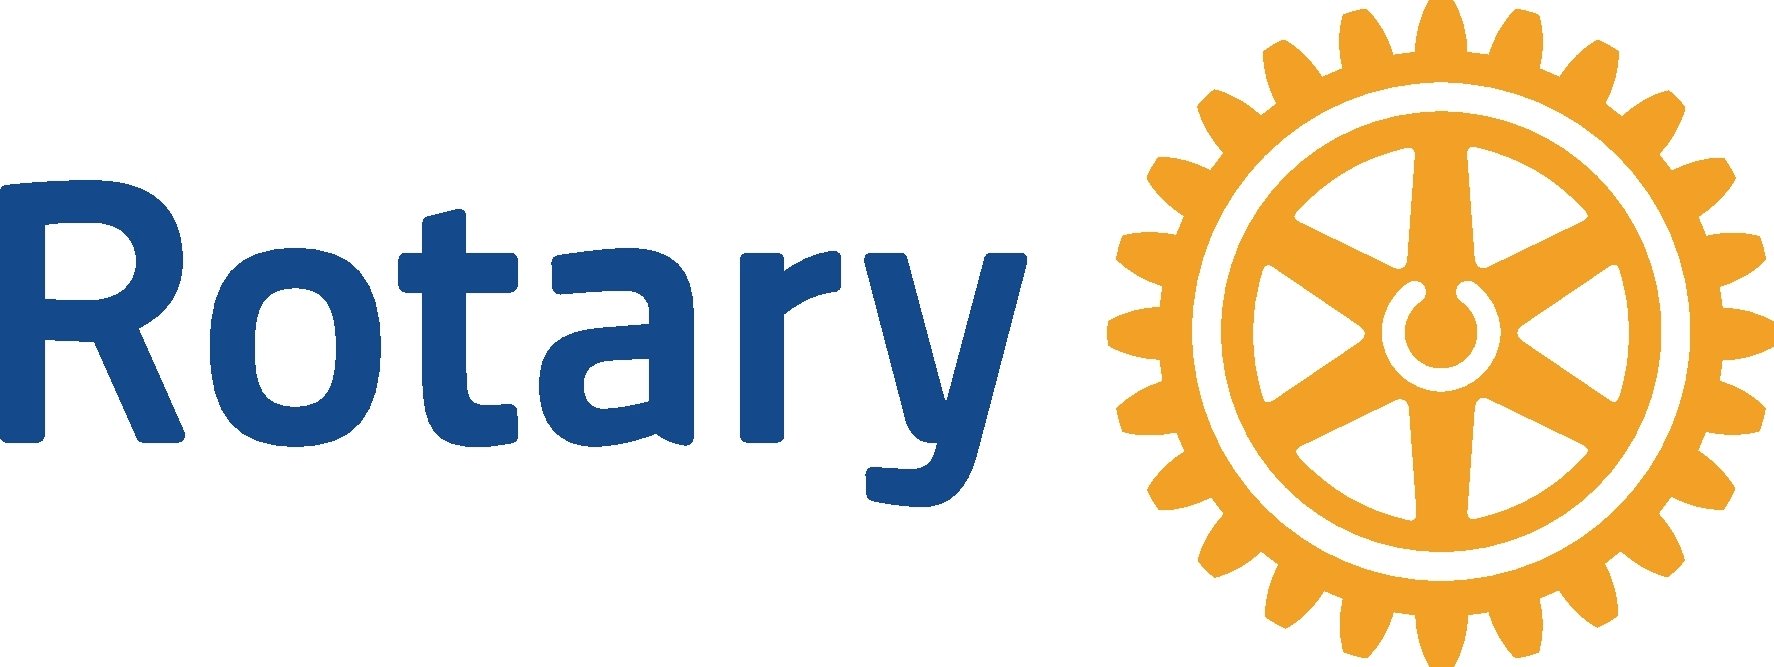 RotaryMBS-Simple_CMYK-C.jpg